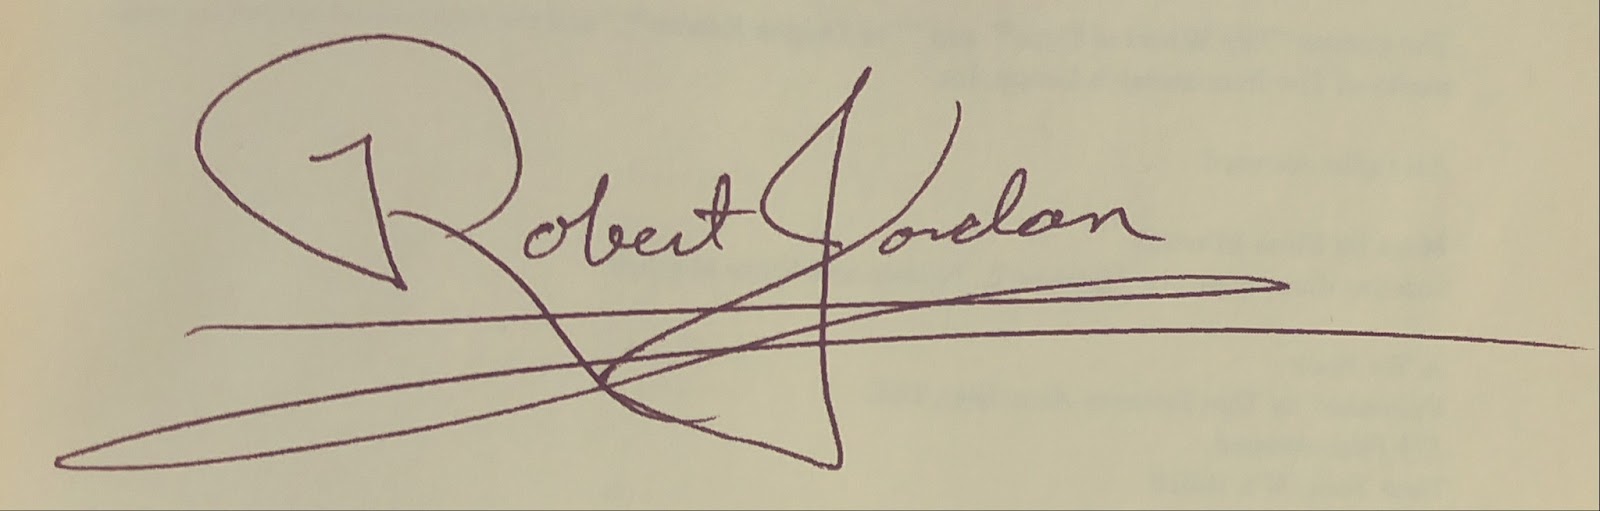 The signature of Robert Jordan